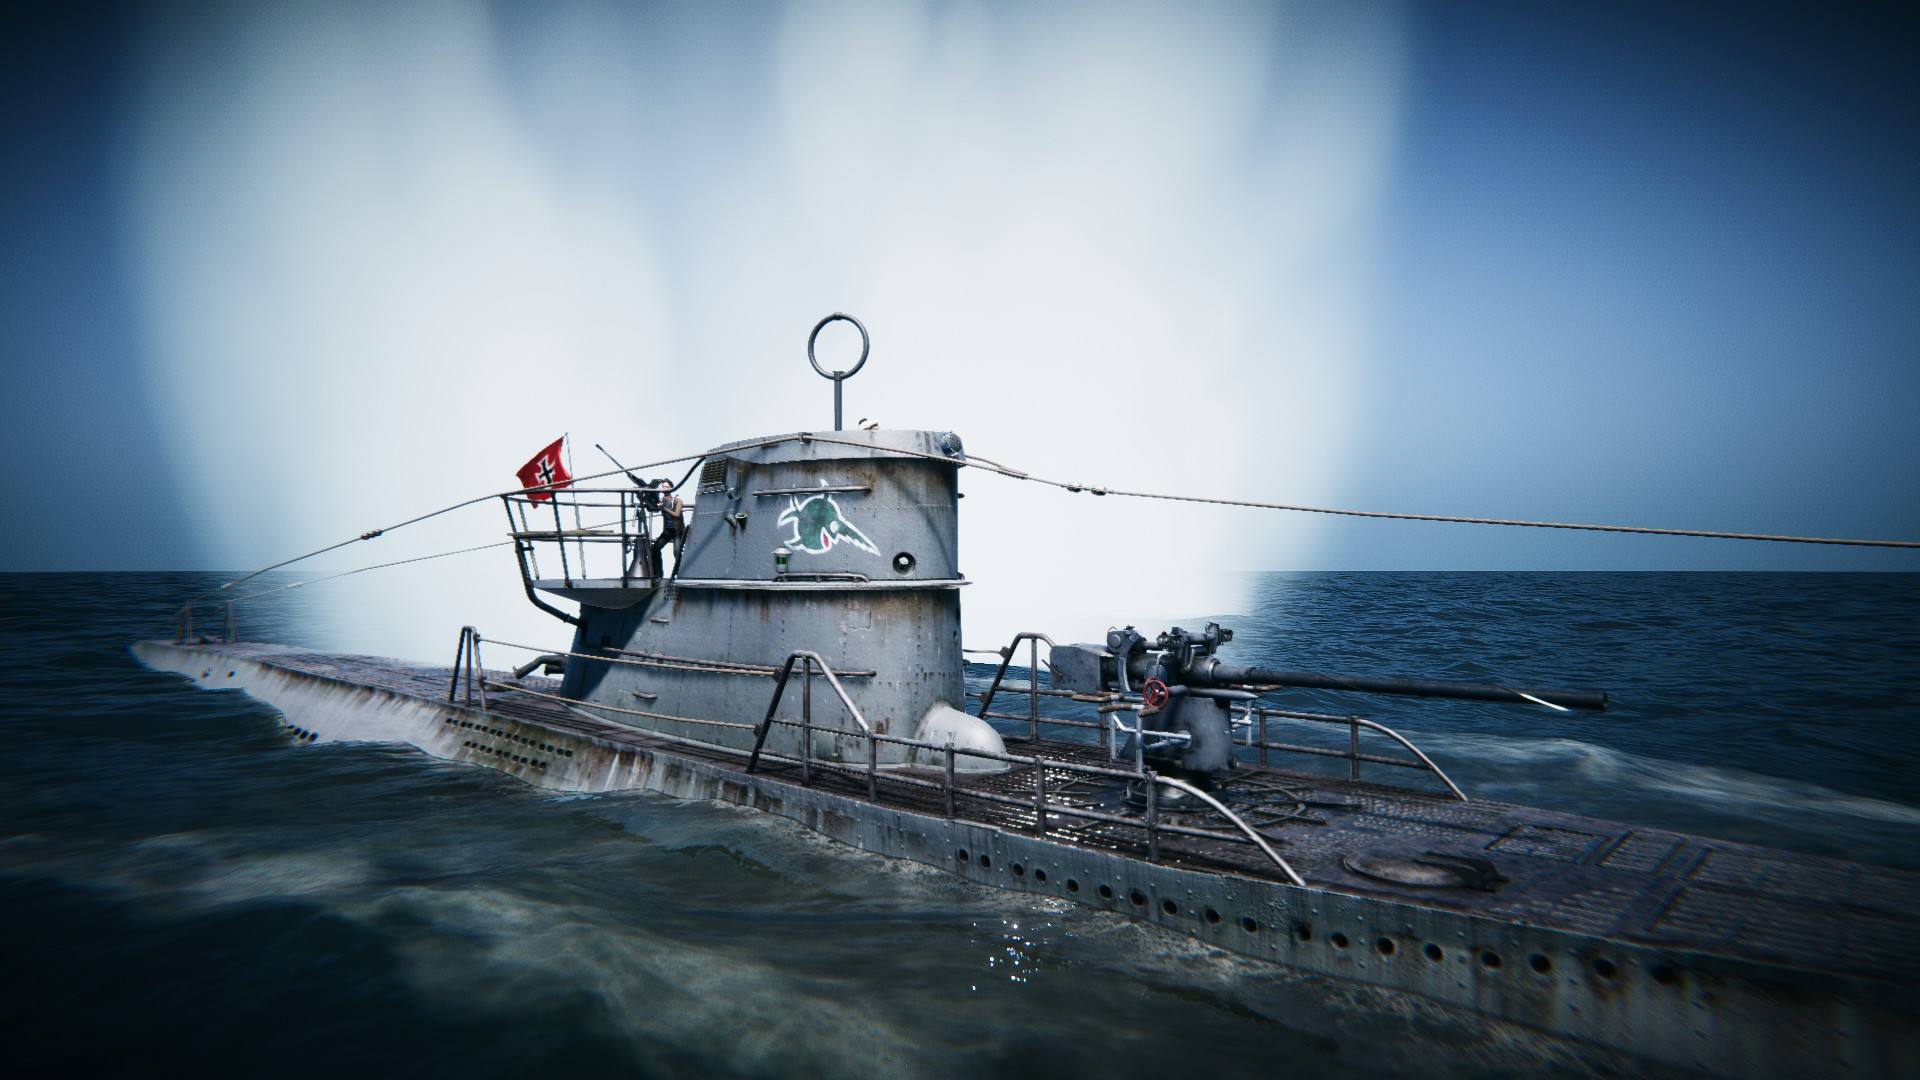 《uboat》(二战时期潜艇的模拟游戏)steam登录 随缘租号,不喜勿租